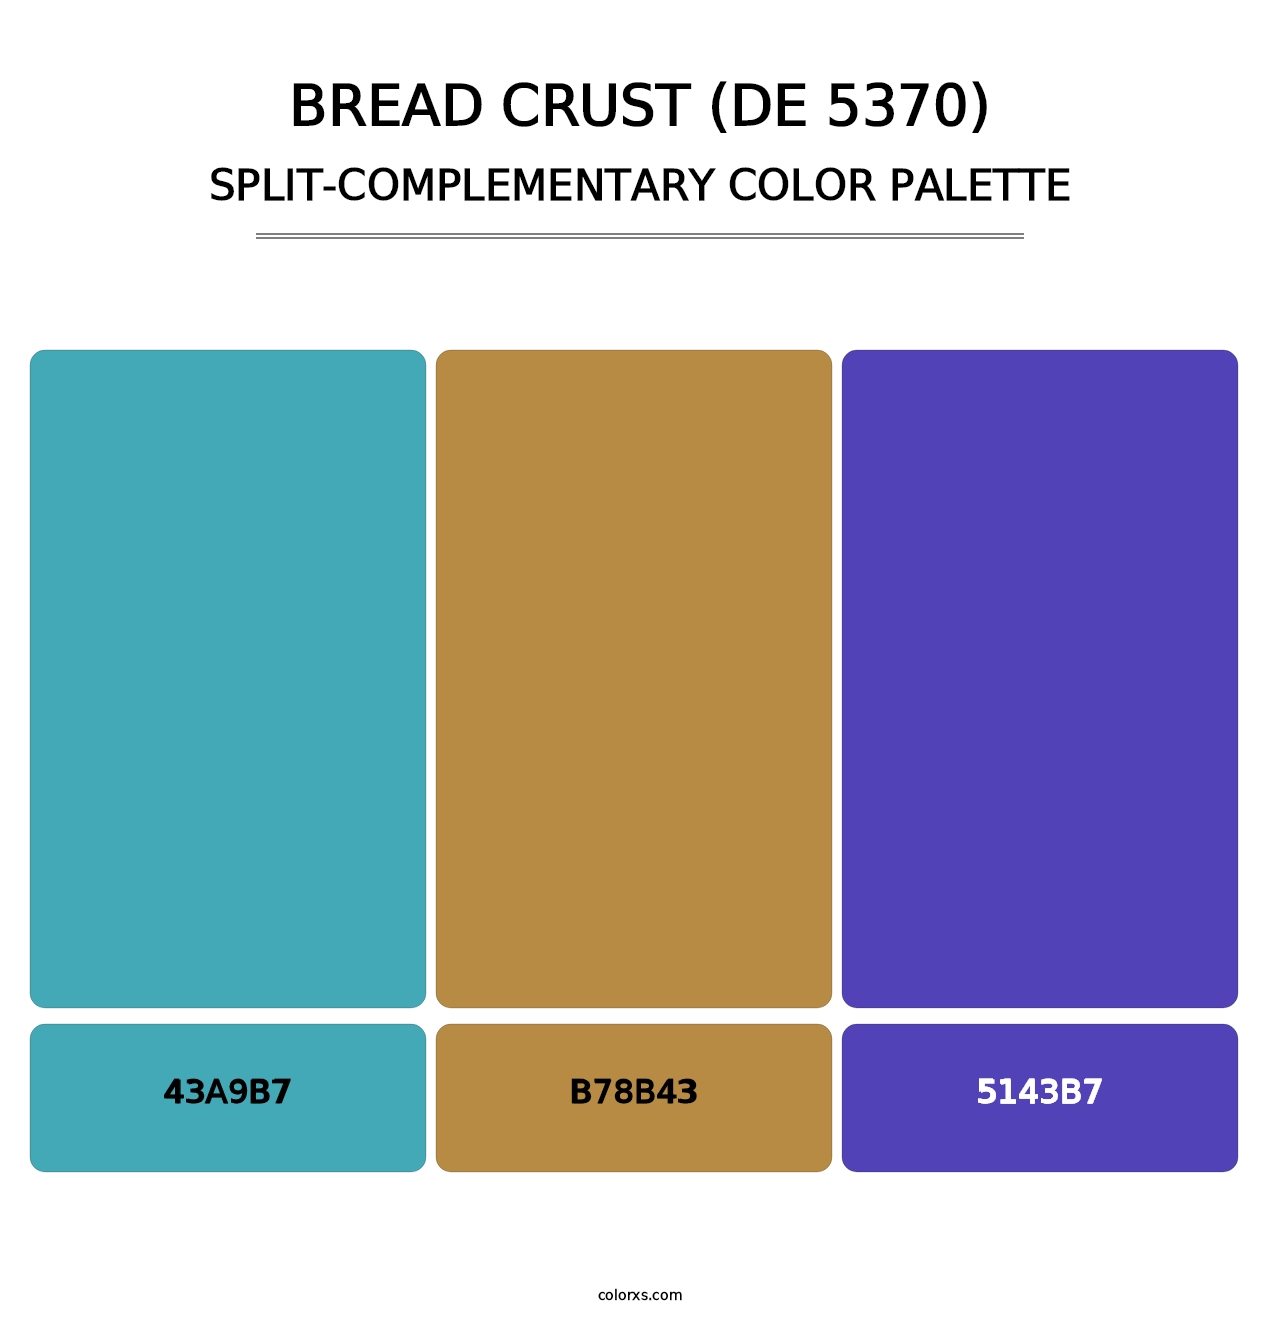 Bread Crust (DE 5370) - Split-Complementary Color Palette